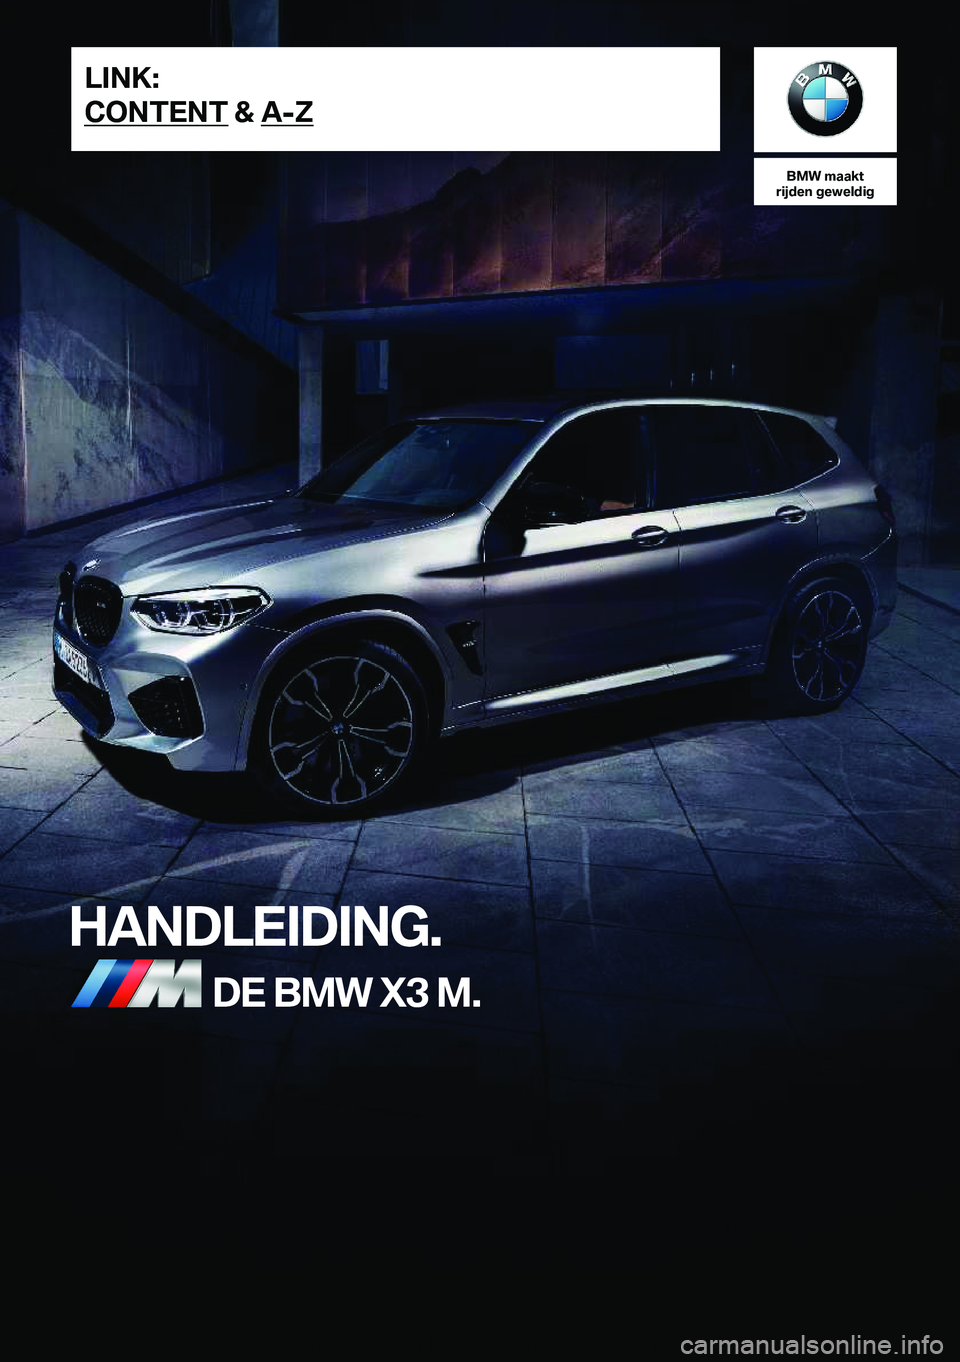 BMW X3 M 2020  Instructieboekjes (in Dutch) �B�M�W��m�a�a�k�t
�r�i�j�d�e�n��g�e�w�e�l�d�i�g
�H�A�N�D�L�E�I�D�I�N�G�.�D�E��B�M�W��X�3��M�.�L�I�N�K�:
�C�O�N�T�E�N�T��&��A�-�Z�O�n�l�i�n�e��E�d�i�t�i�o�n��f�o�r��P�a�r�t��n�o�.��0�1�4�0�